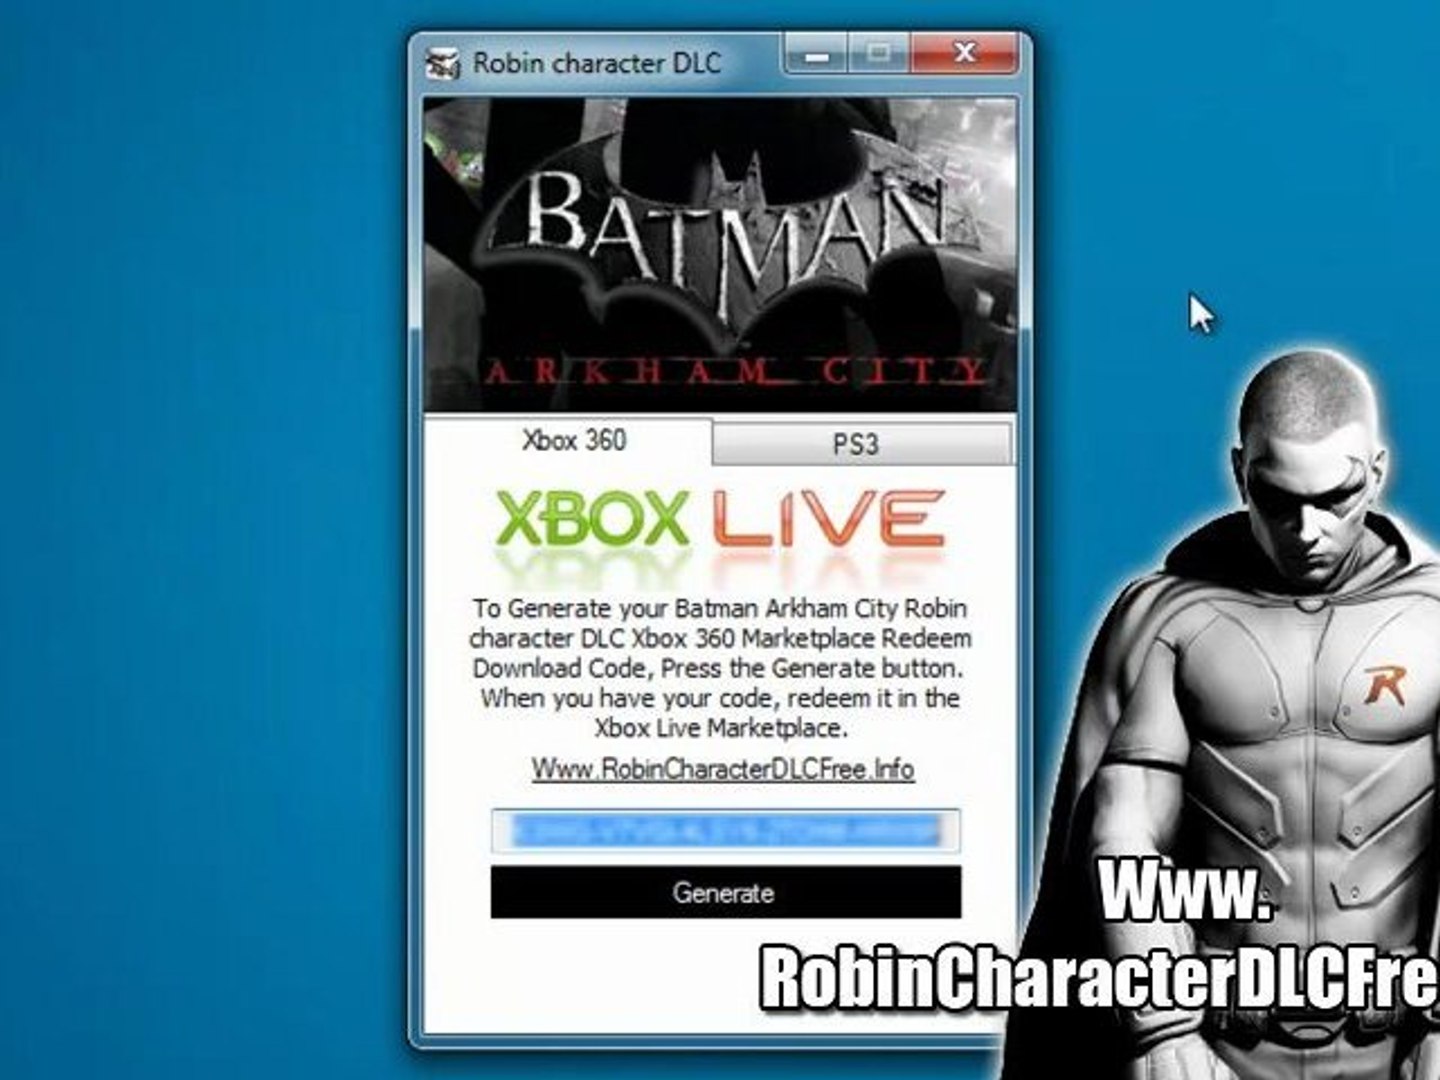 Batman: Arkham City terá edição 'game do ano' incluindo extras e DLCs